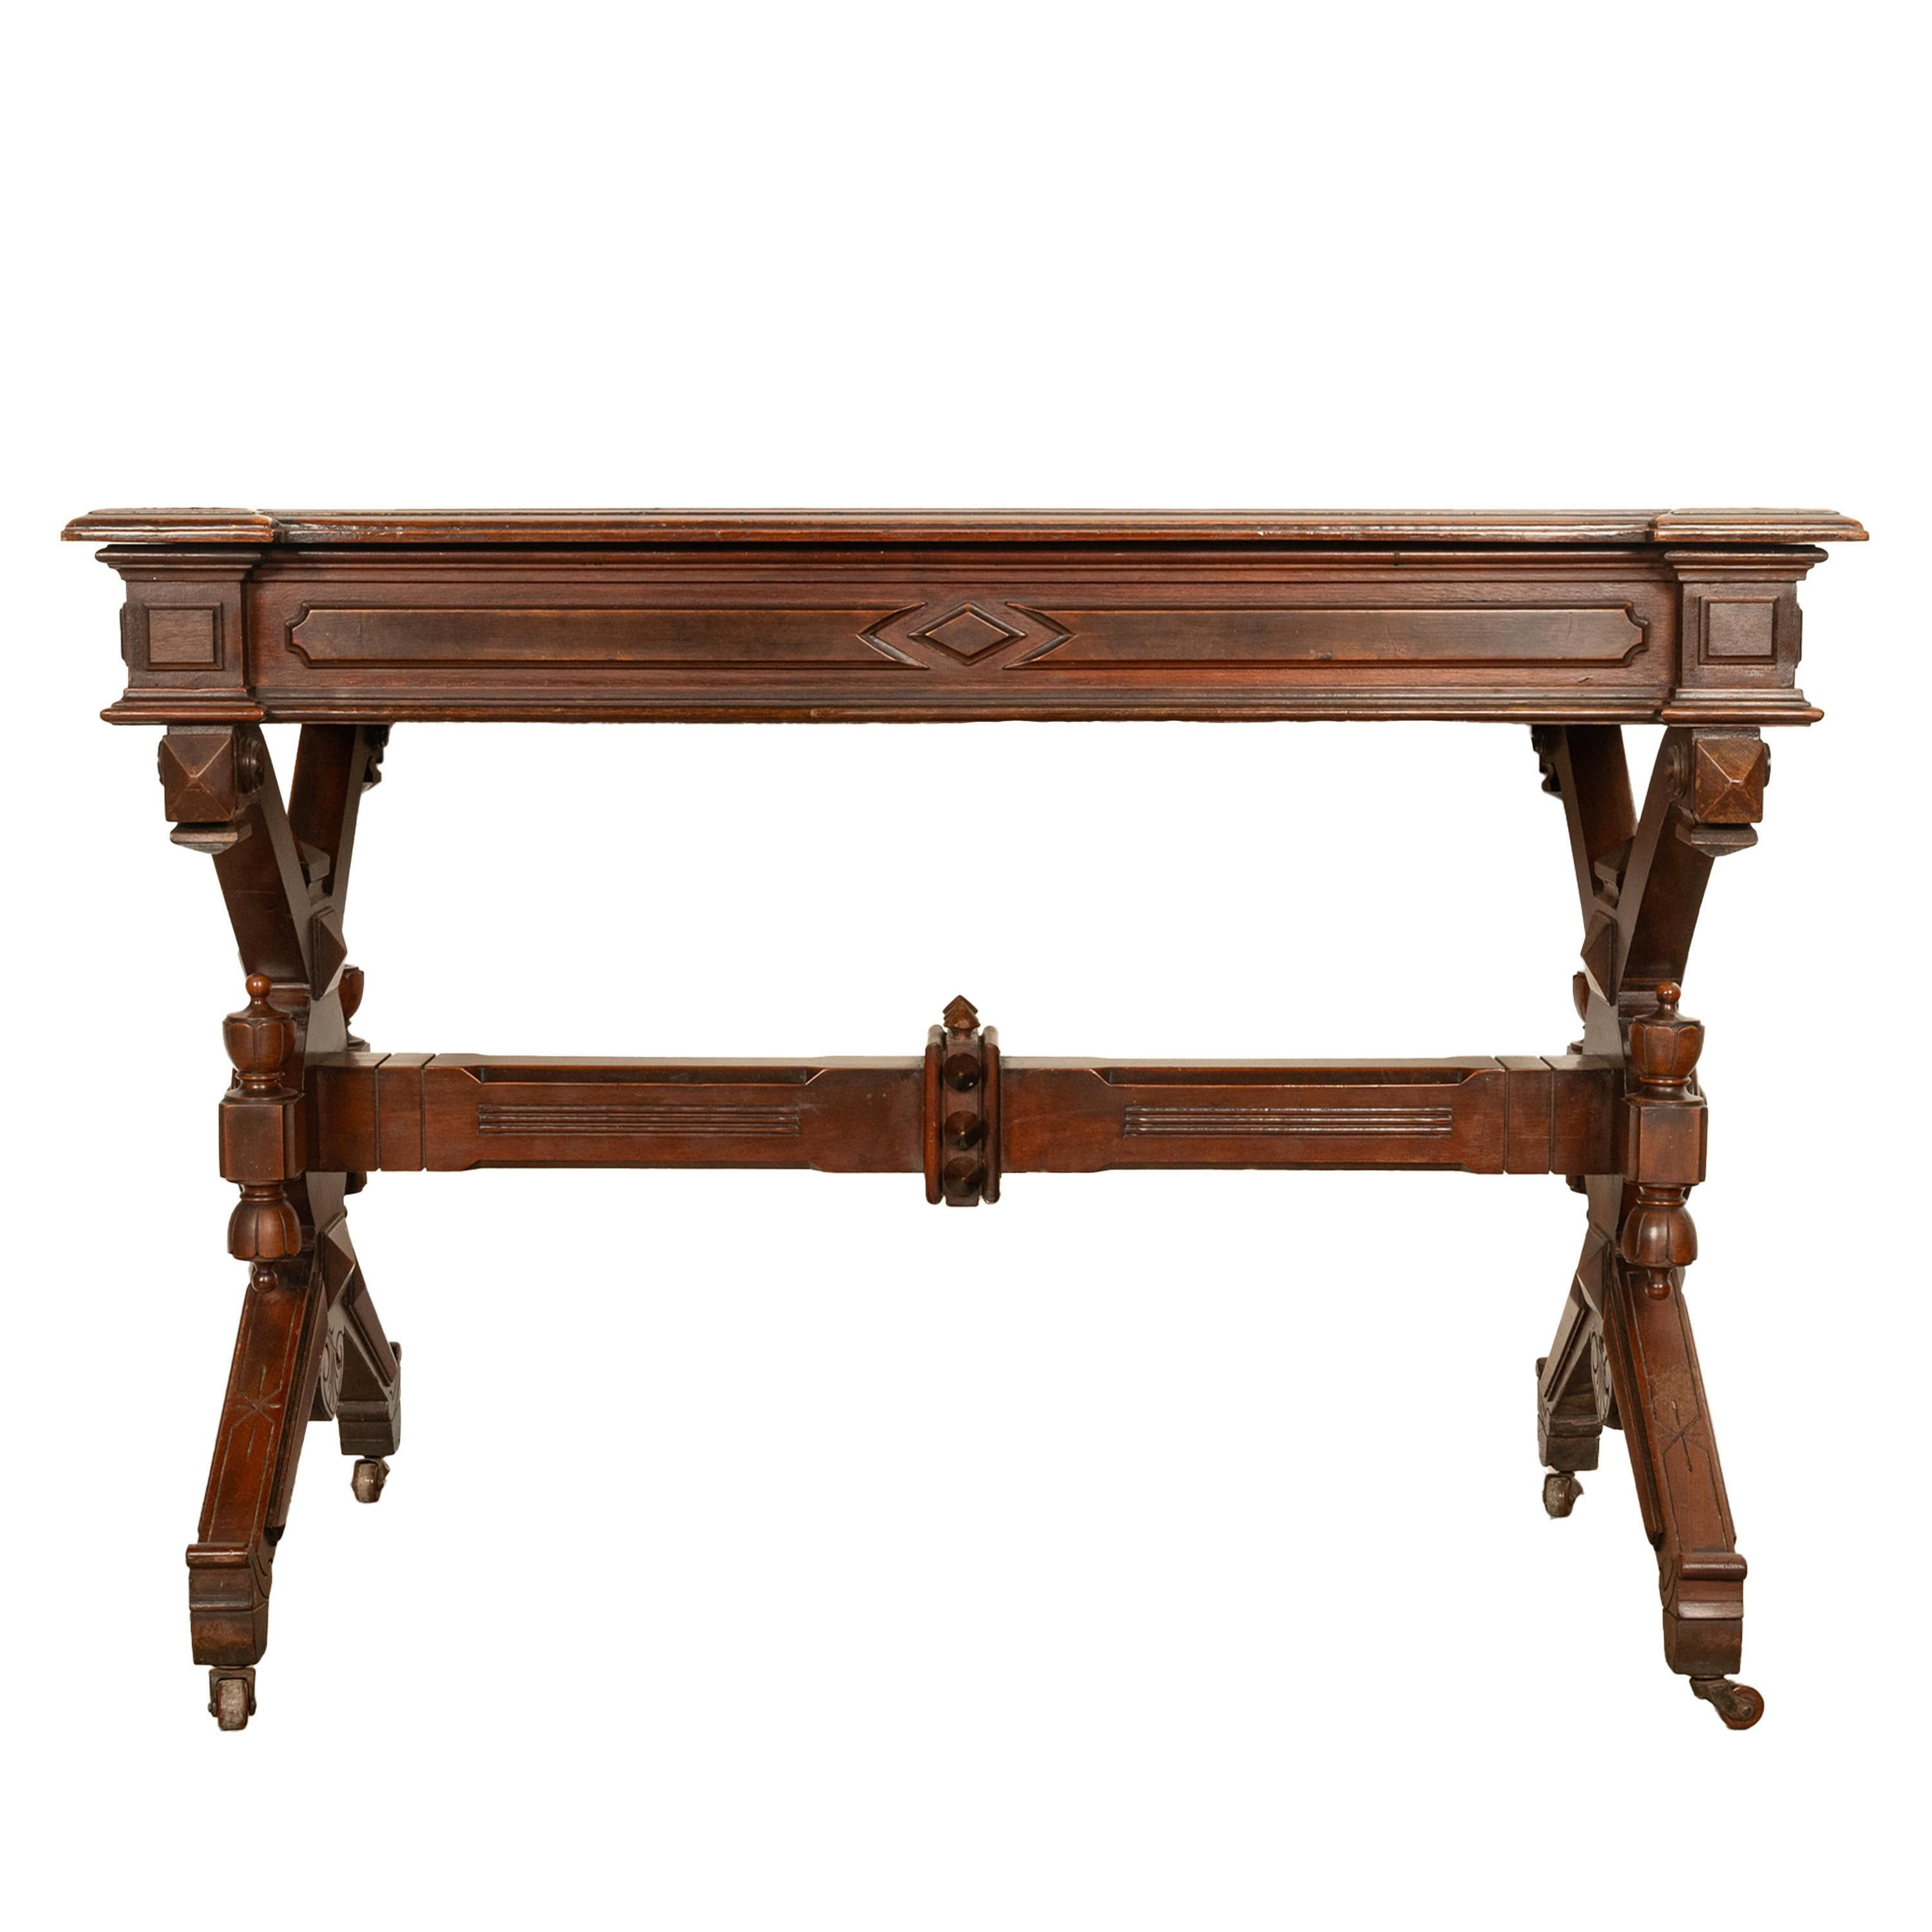 Antique American Walnut Renaissance Revival Aesthetic Movement Desk Table 1875 For Sale 4